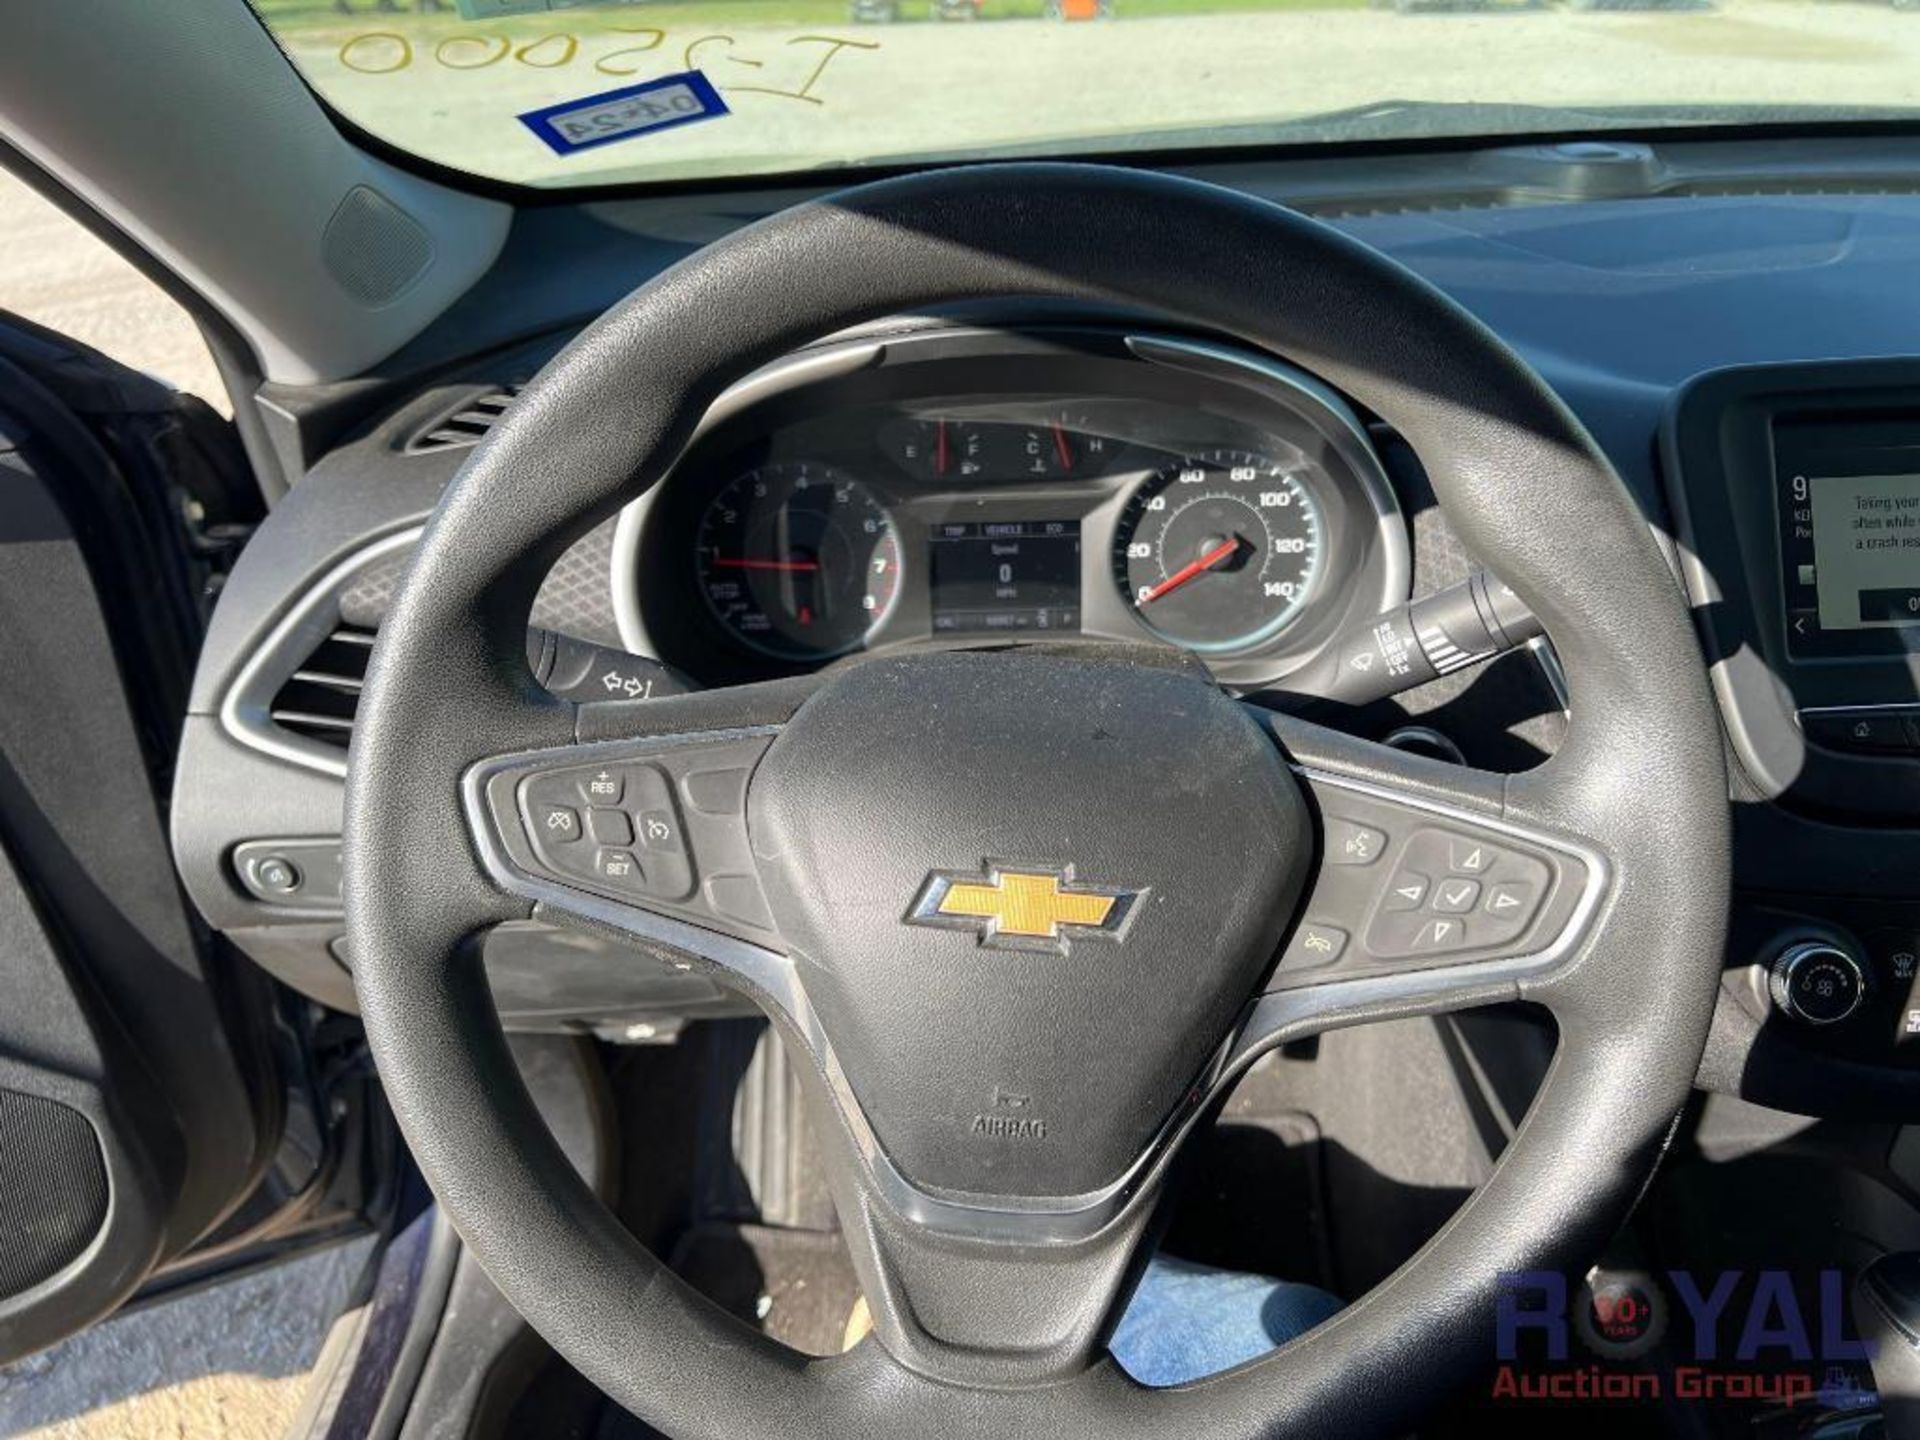 2016 Chevrolet Malibu LS Sedan - Image 20 of 47